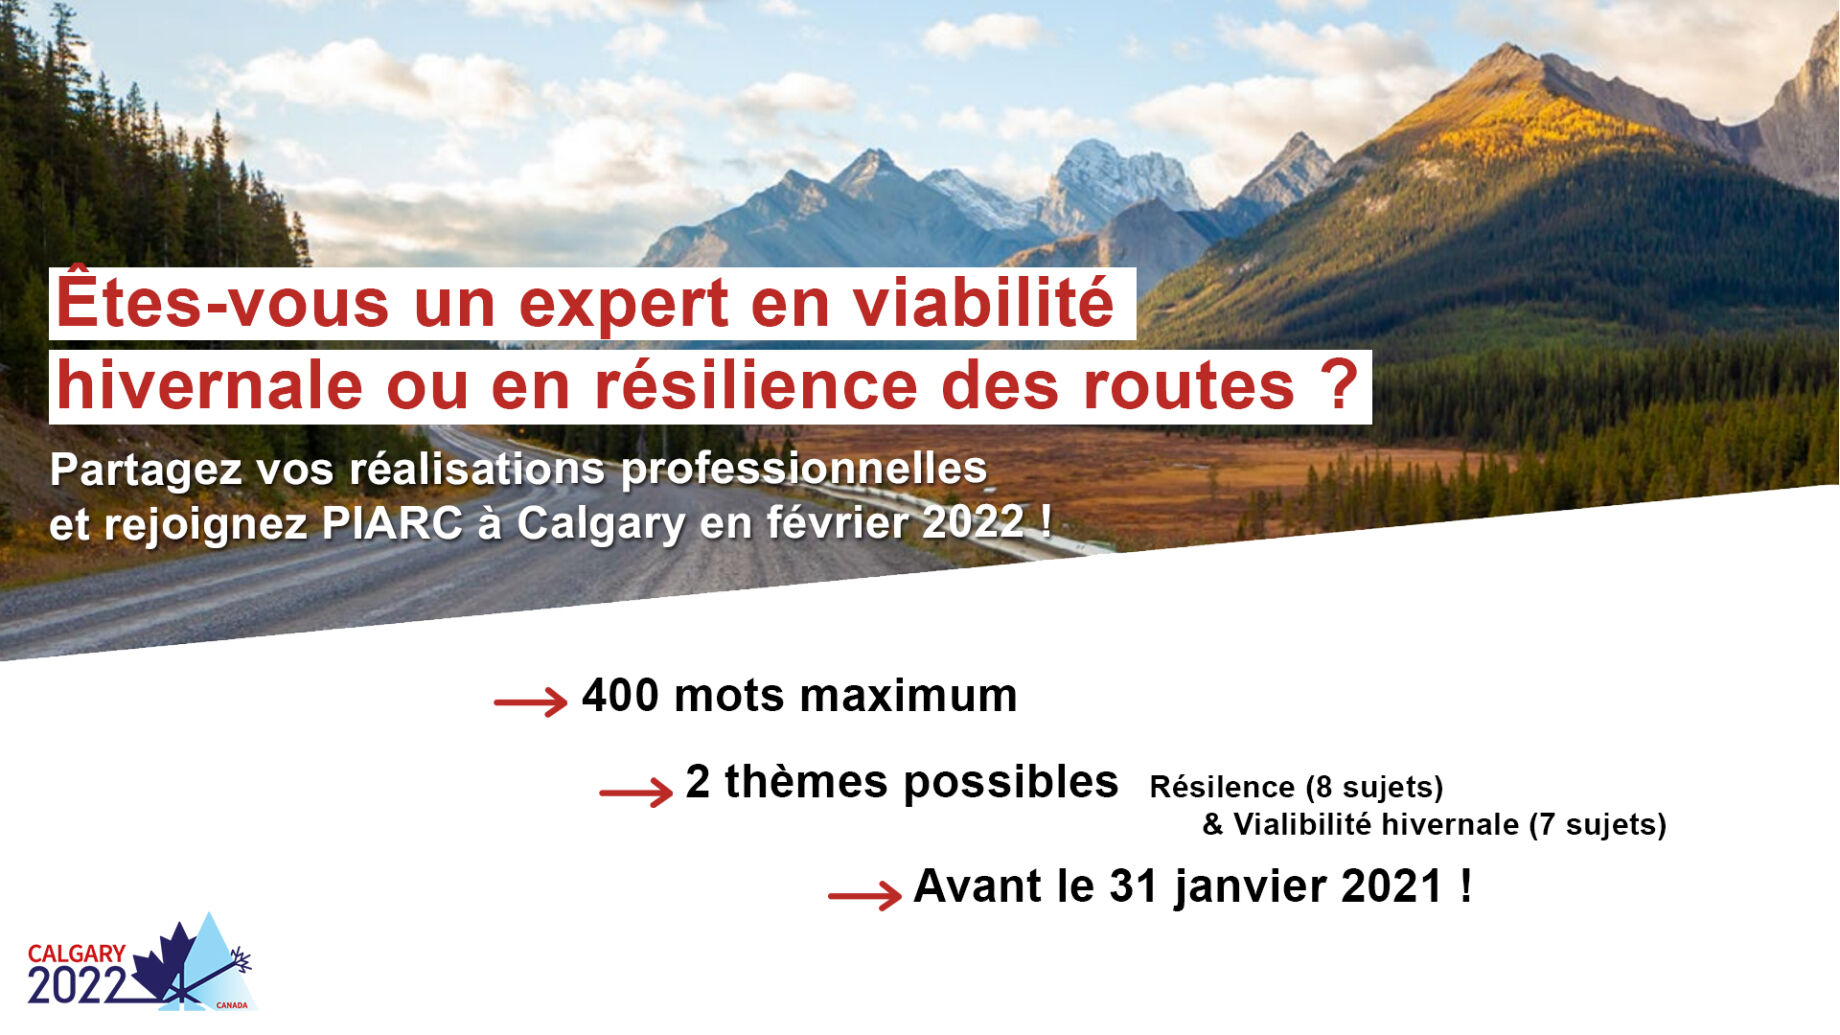 Êtes-vous un expert en viabilité hivernale ou en résilience des routes ?
Partagez vos réalisations professionnelles en soumettant un résumé de
400 mots avant le 31 janvier 2021 !